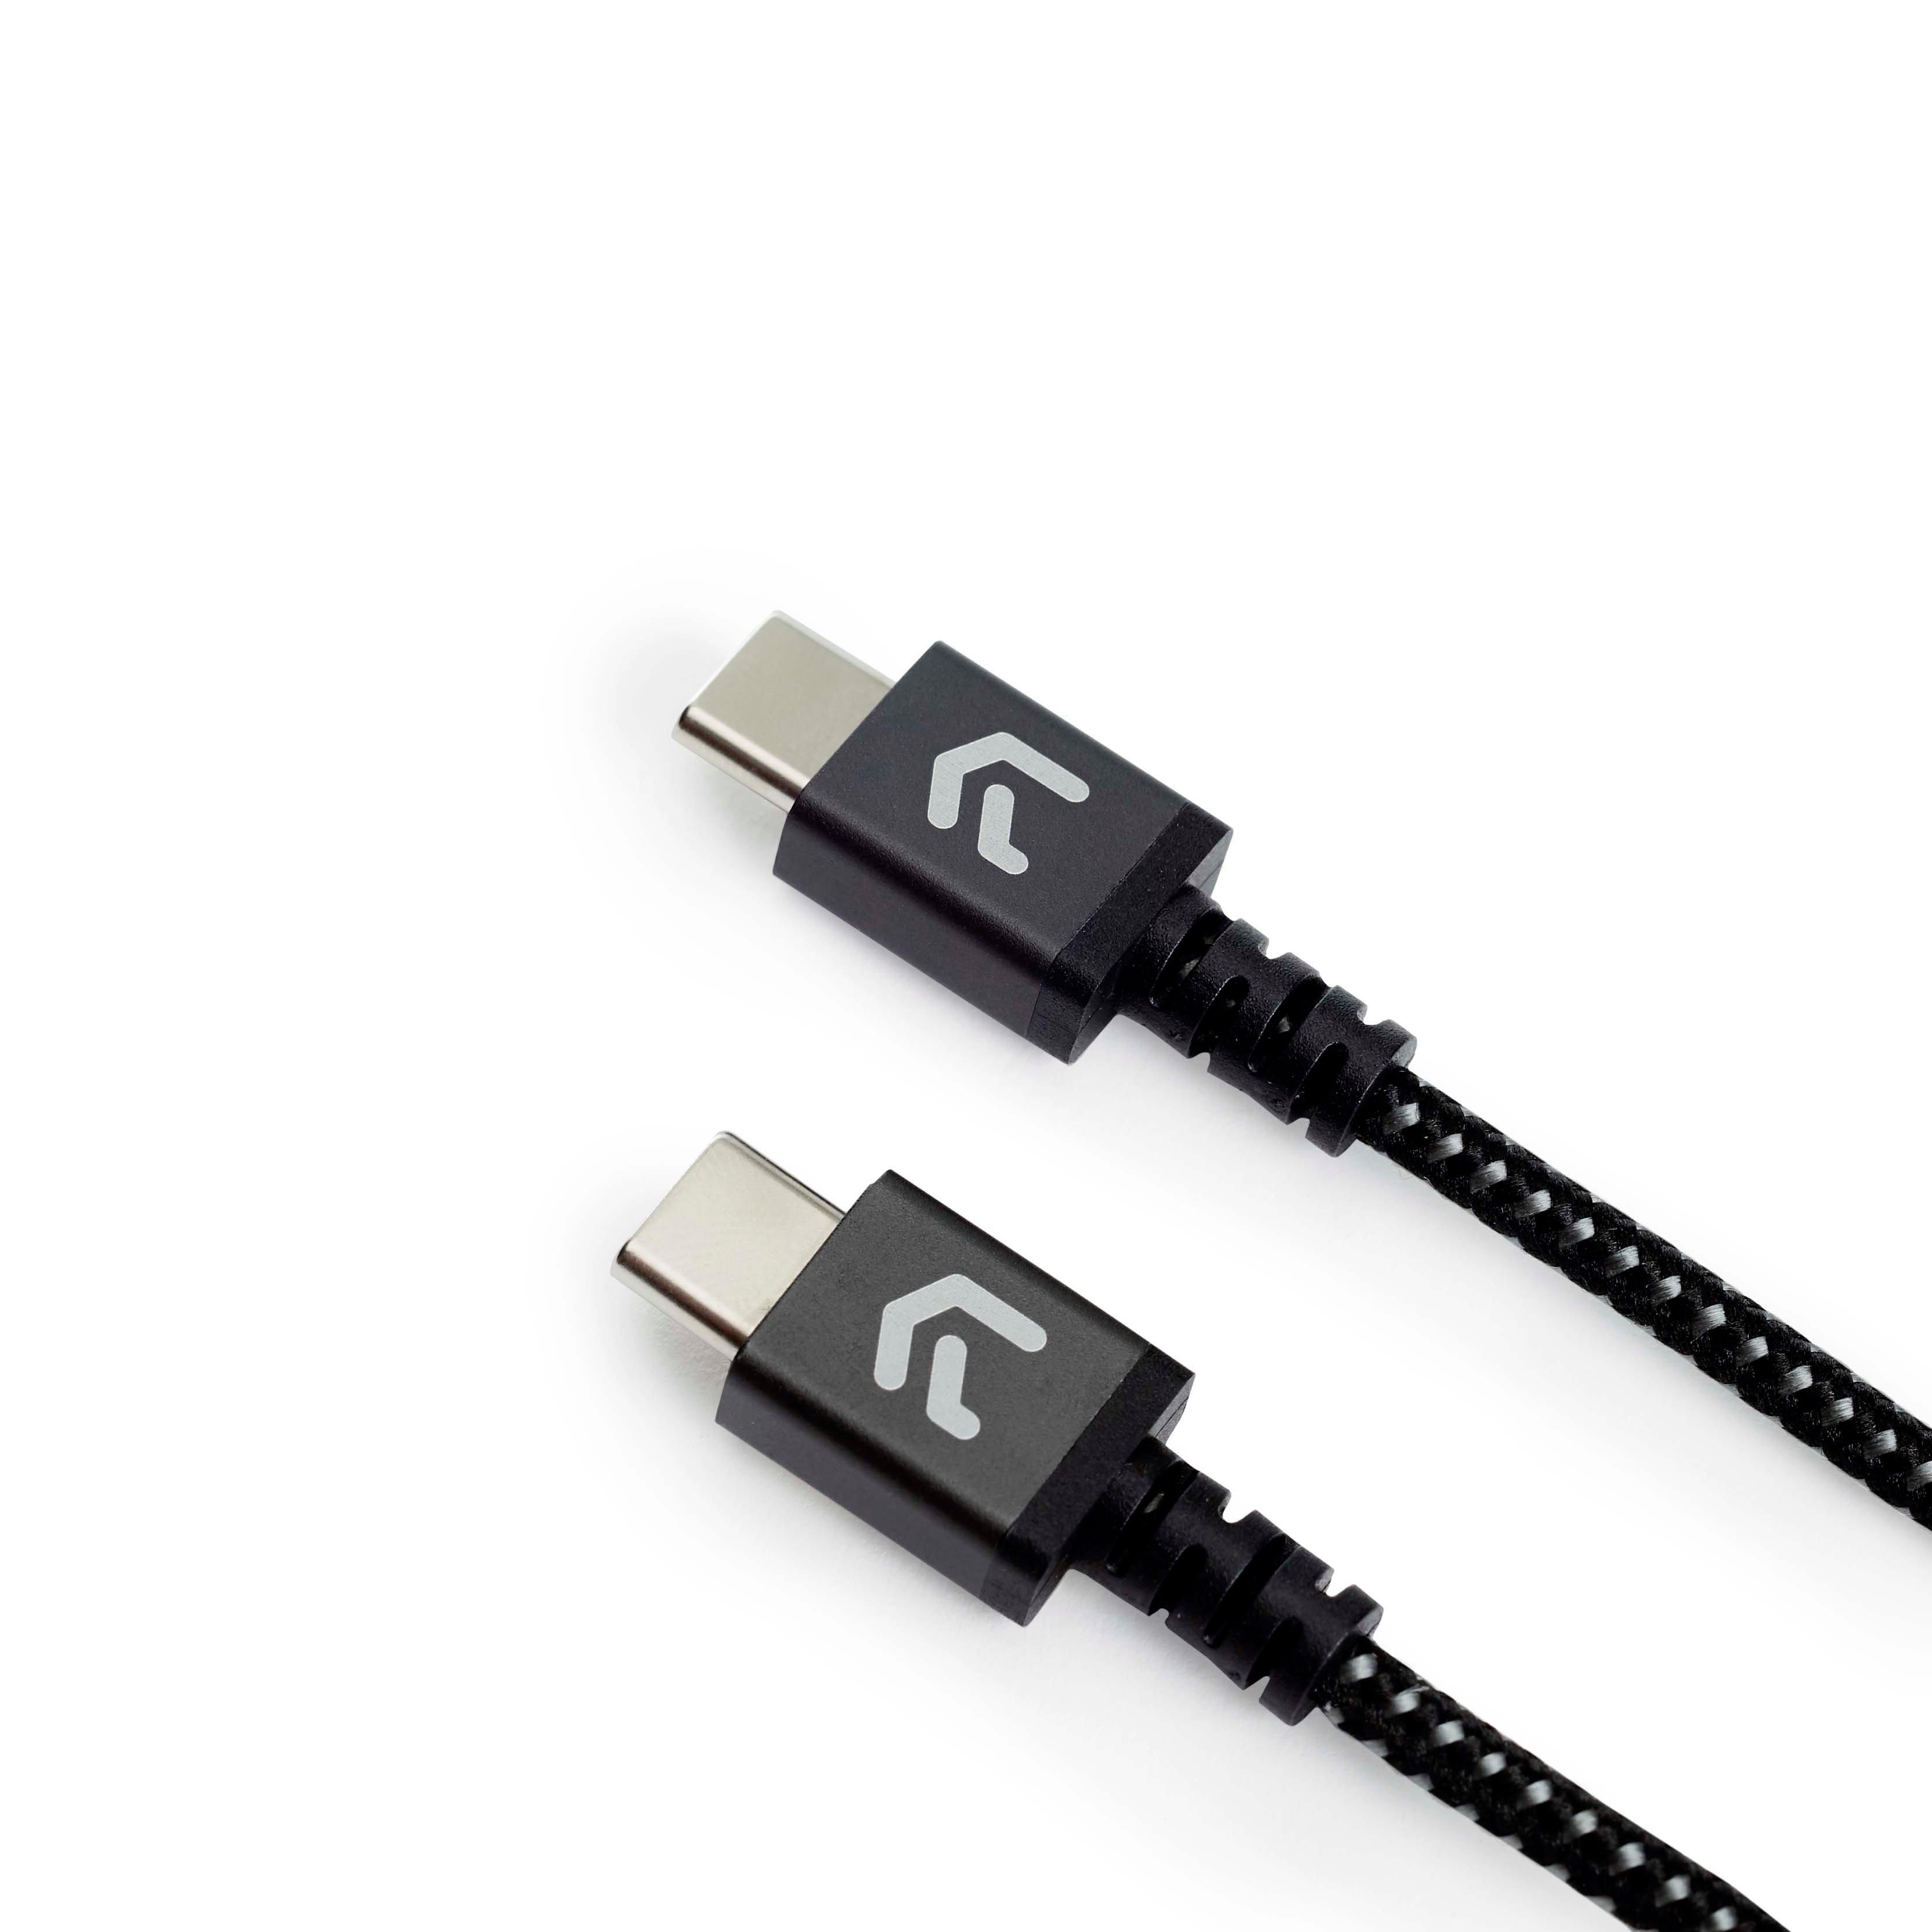 https://media.gamestop.com/i/gamestop/11186067/Atrix-USB-C-to-USB-C-Nylon-Cable-GameStop-Exclusive